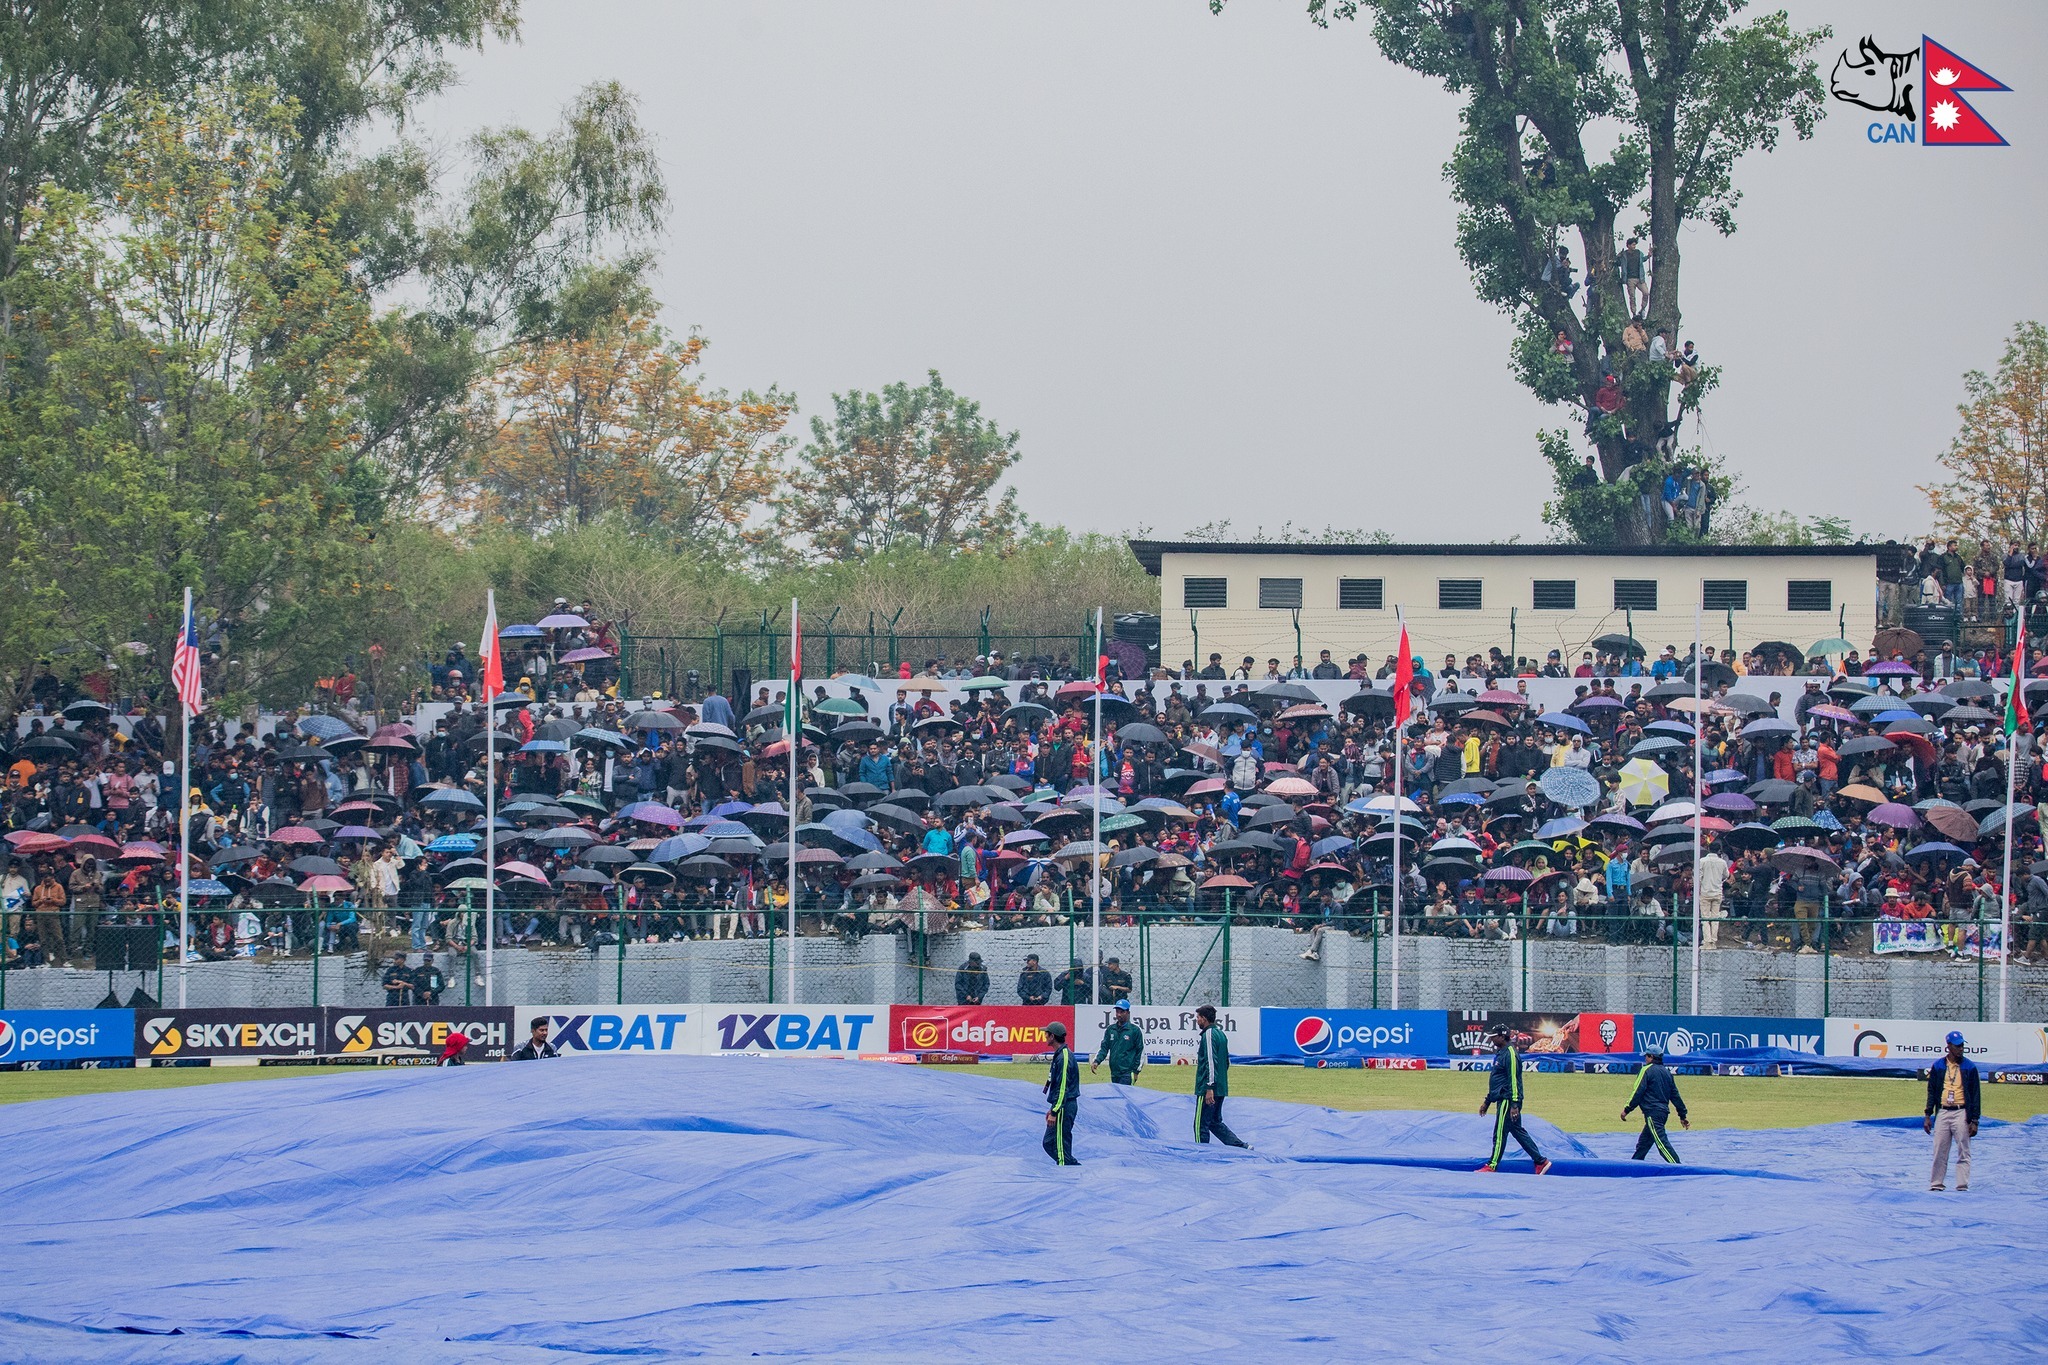 वर्षाले प्रभावित नेपाल–यूएईबीचको खेल मंगलबार हुने यूएईले १०६–९ को स्थितिमै खेल्न शुरू गर्ने